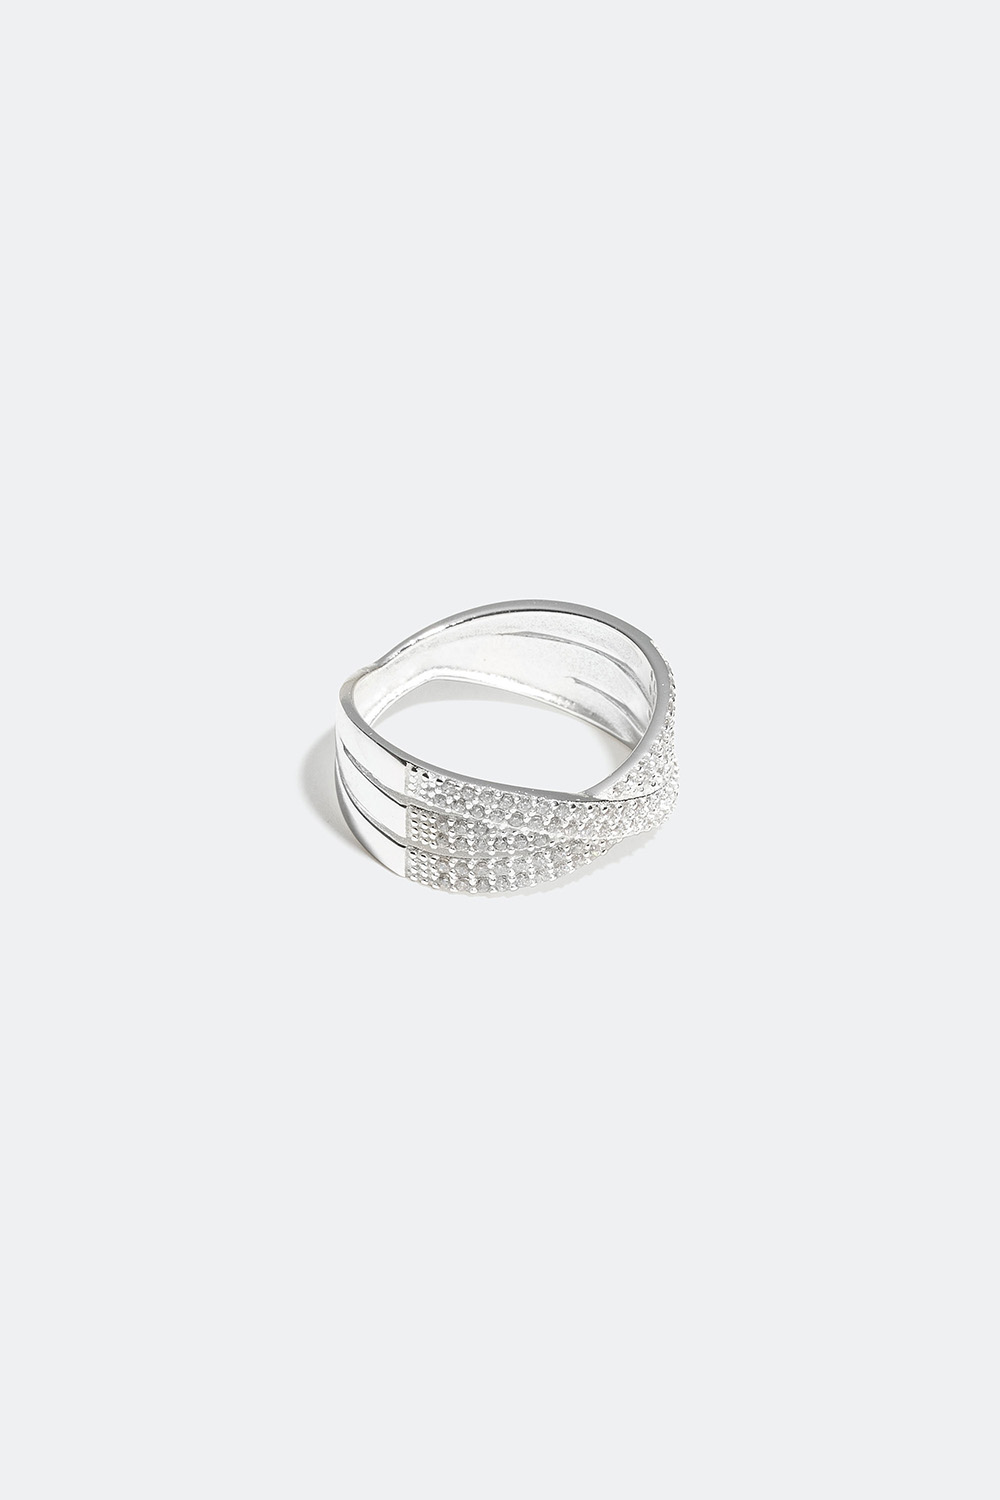 Krydset ring i ægte sølv med kubisk zirkonia i gruppen Ægte sølv / Sølvringe / Sølv hos Glitter (55600002)